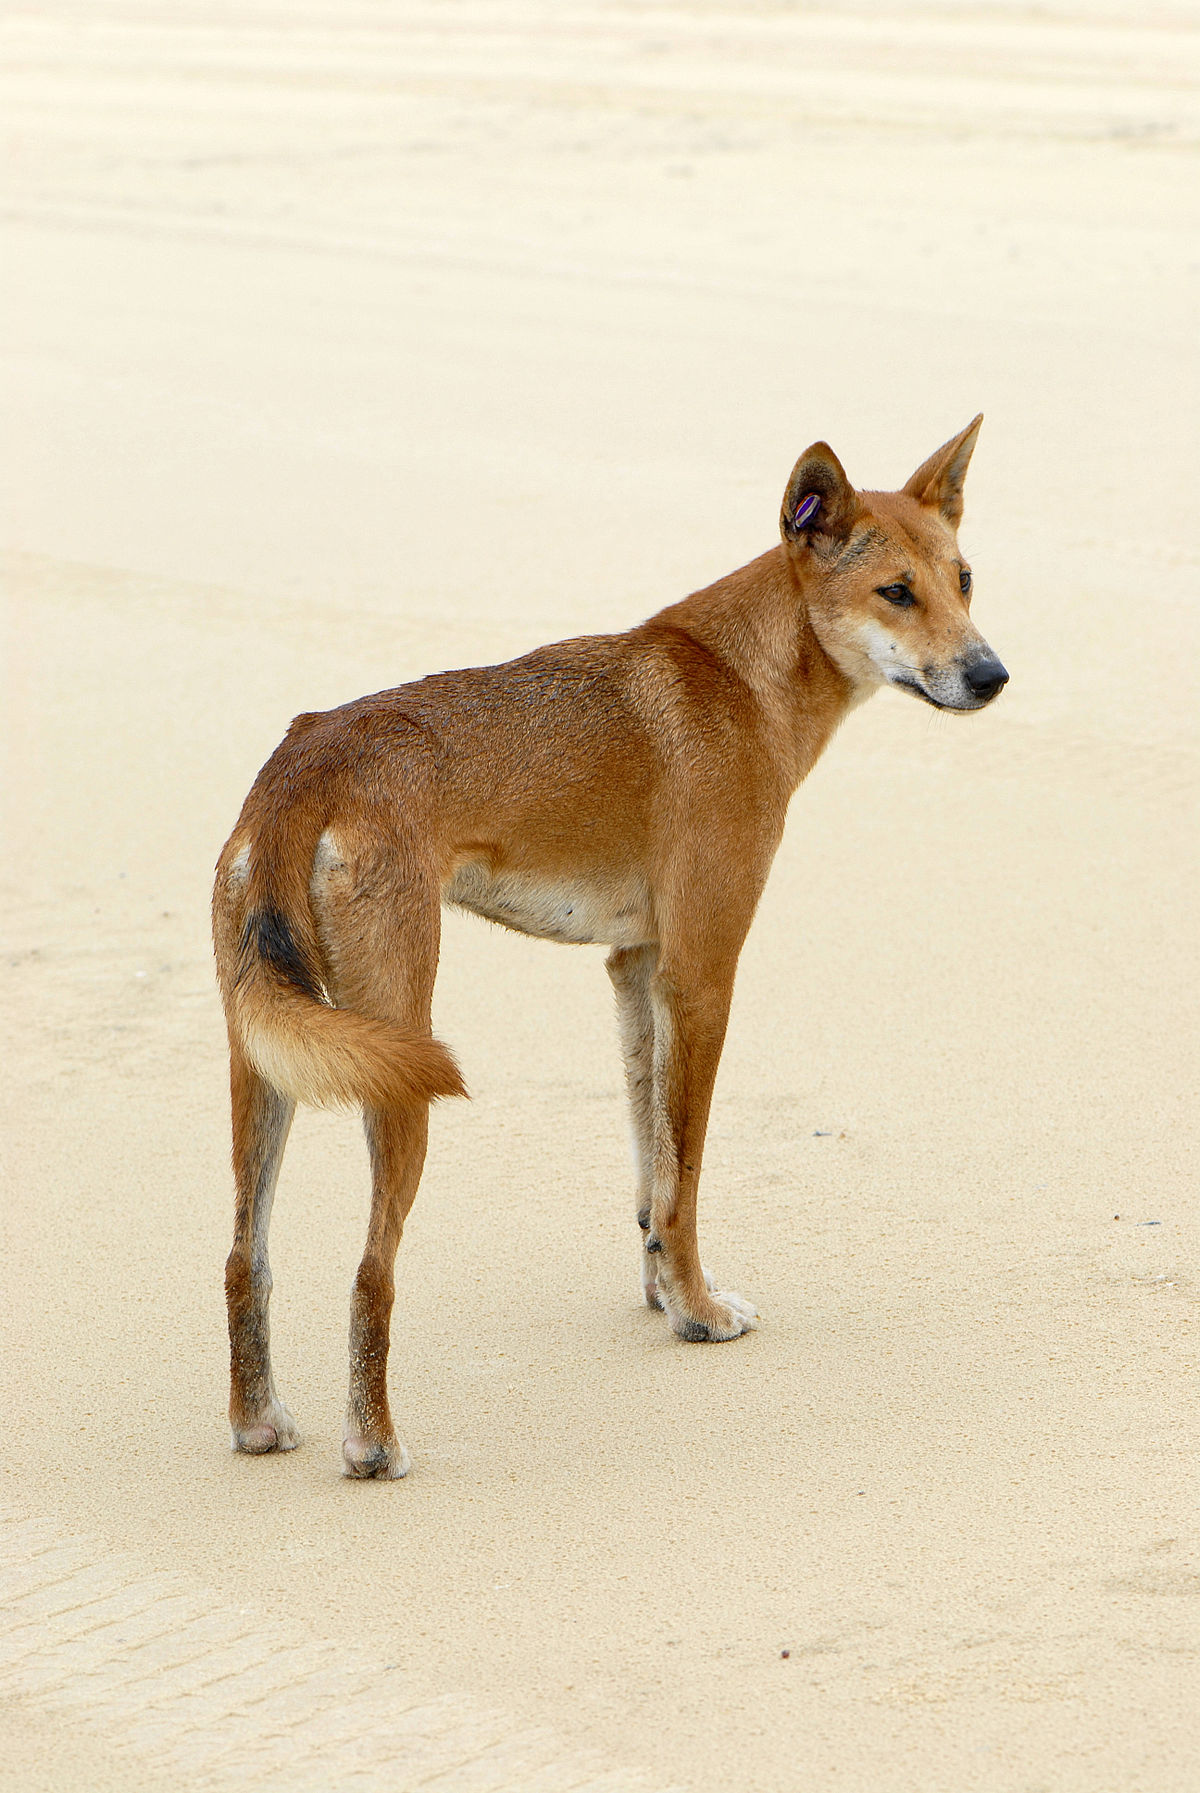 Thưởng thức tài năng và sắc đẹp của giống chó Canis lupus dingo thông qua ảnh. Chúng là một phần quan trọng của văn hóa và động vật hoang dã của Australia.